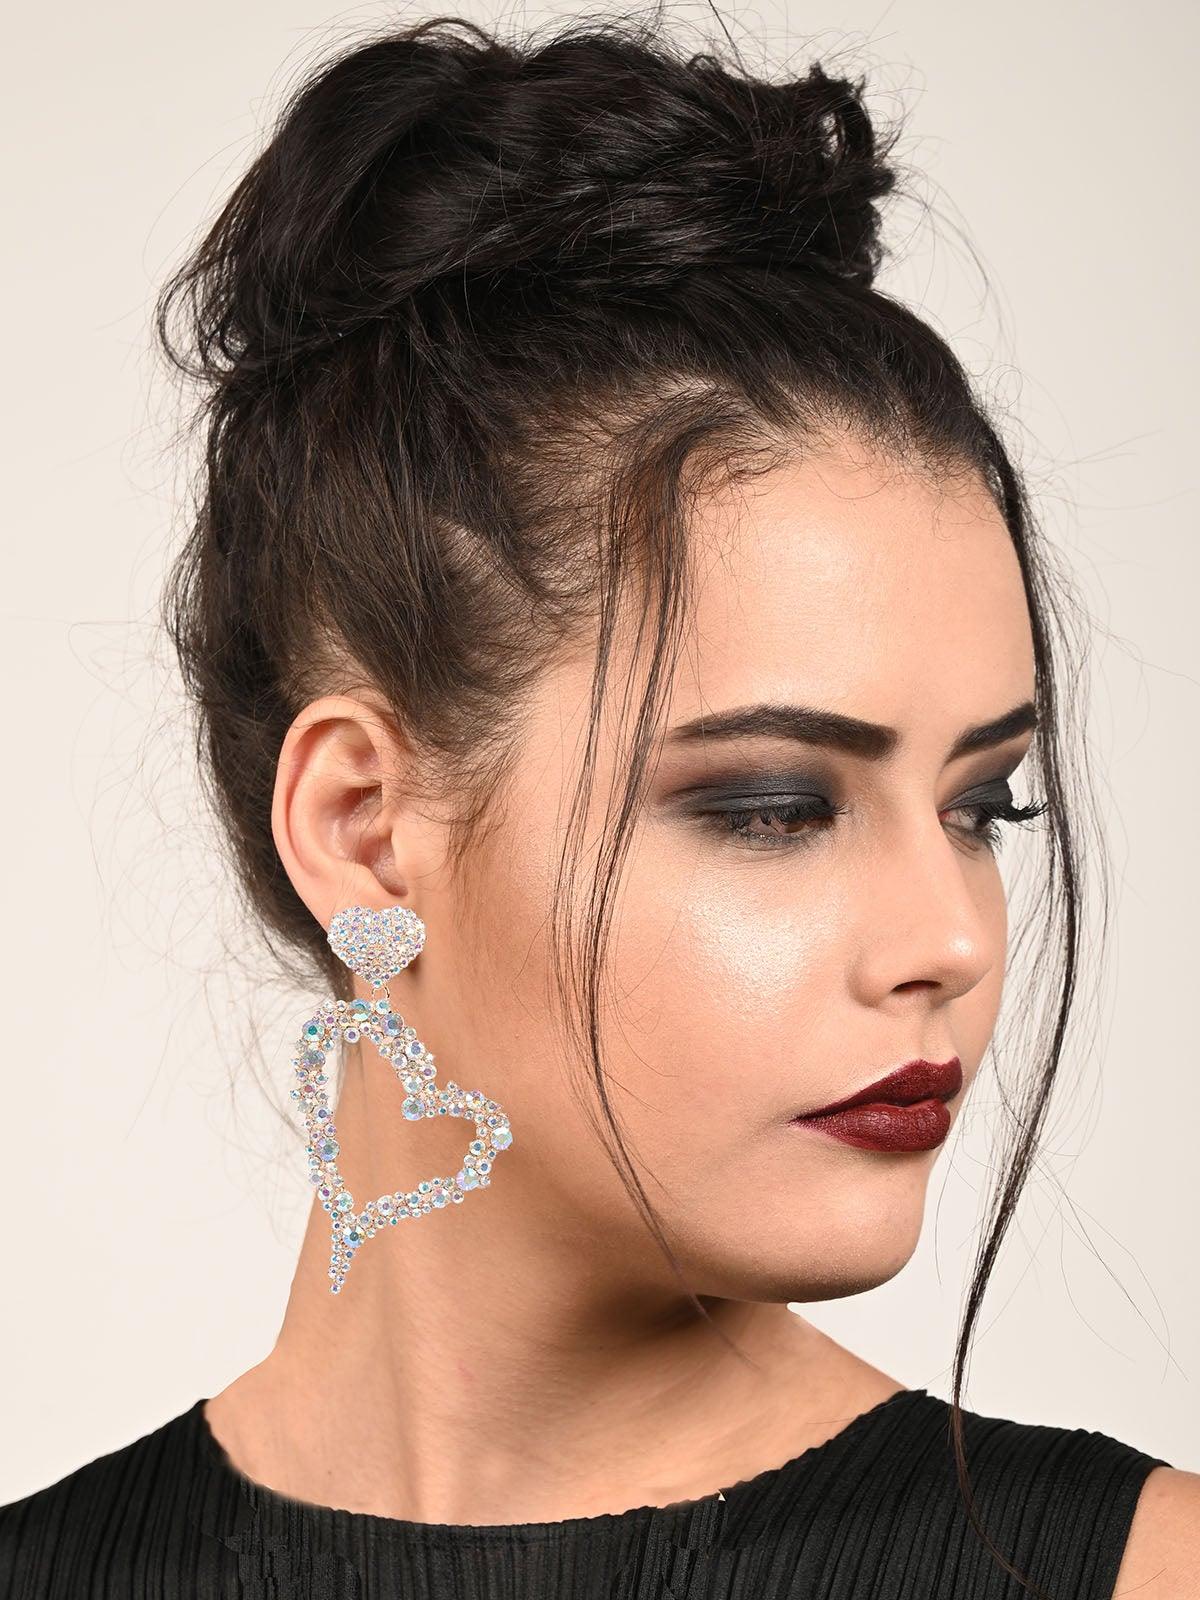 Women's Heart Shaped Studded Drop Earrings - Odette